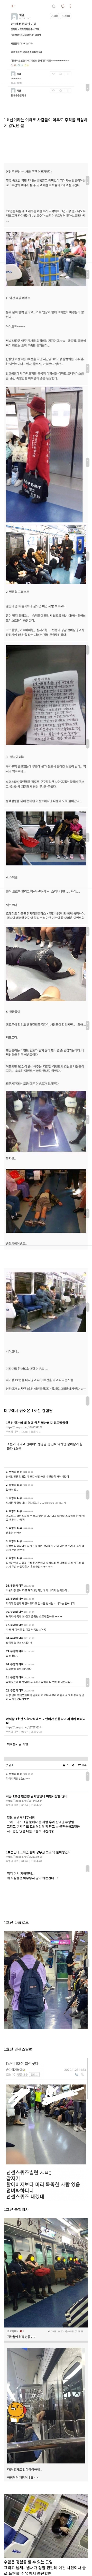 썸네일-한국에서 가장 관심받기 힘든 곳-이미지